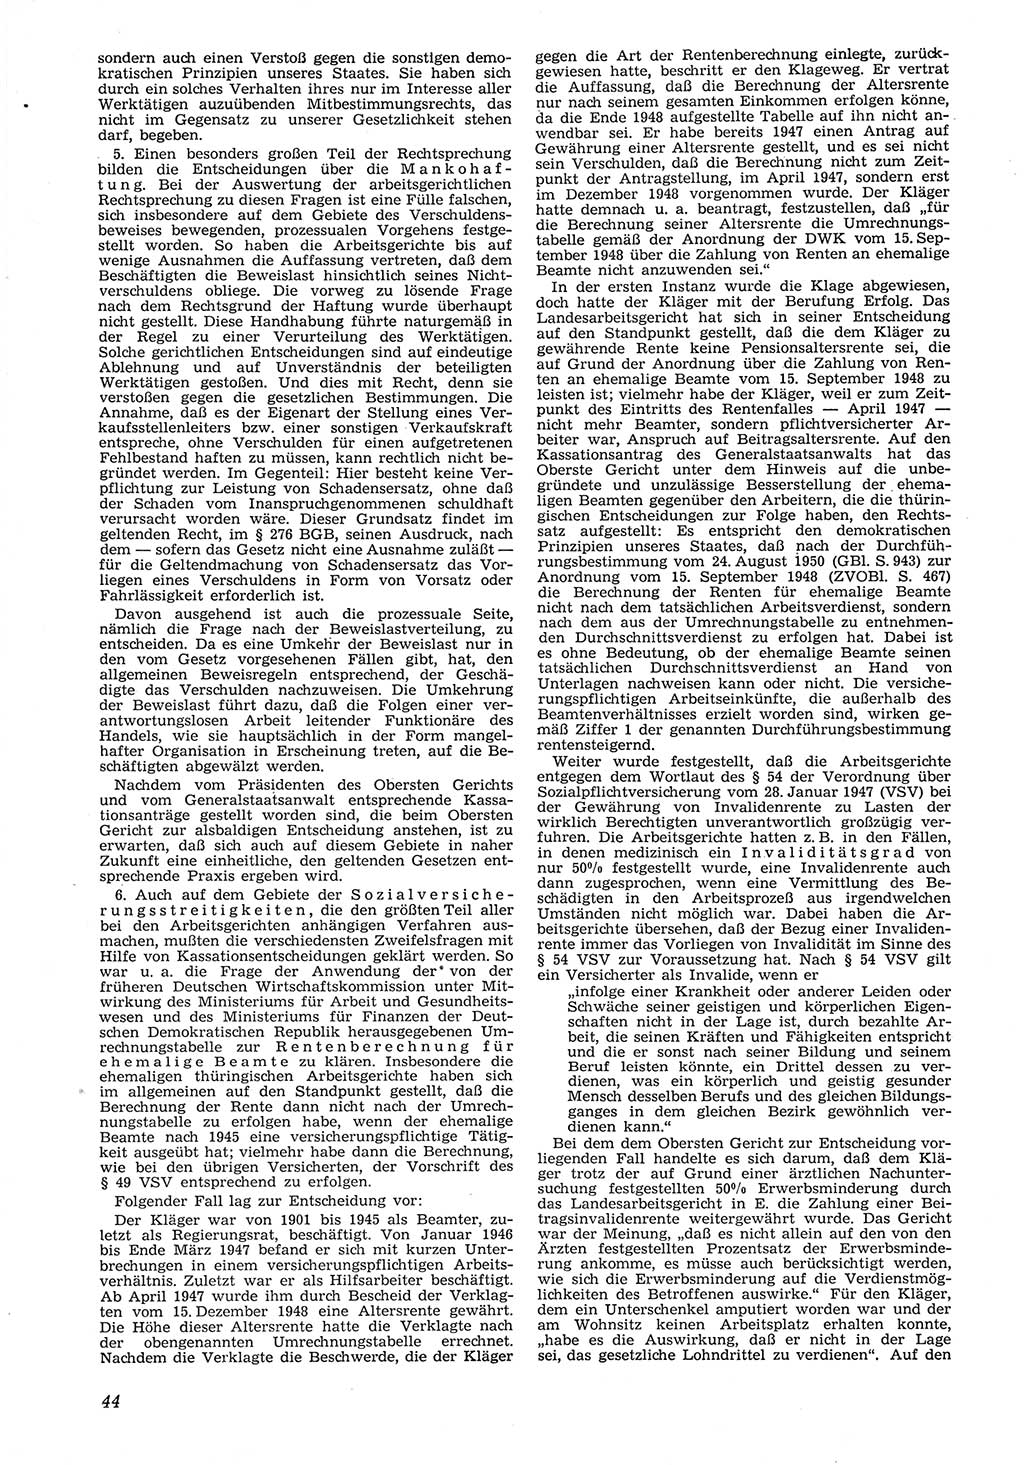 Neue Justiz (NJ), Zeitschrift für Recht und Rechtswissenschaft [Deutsche Demokratische Republik (DDR)], 8. Jahrgang 1954, Seite 44 (NJ DDR 1954, S. 44)